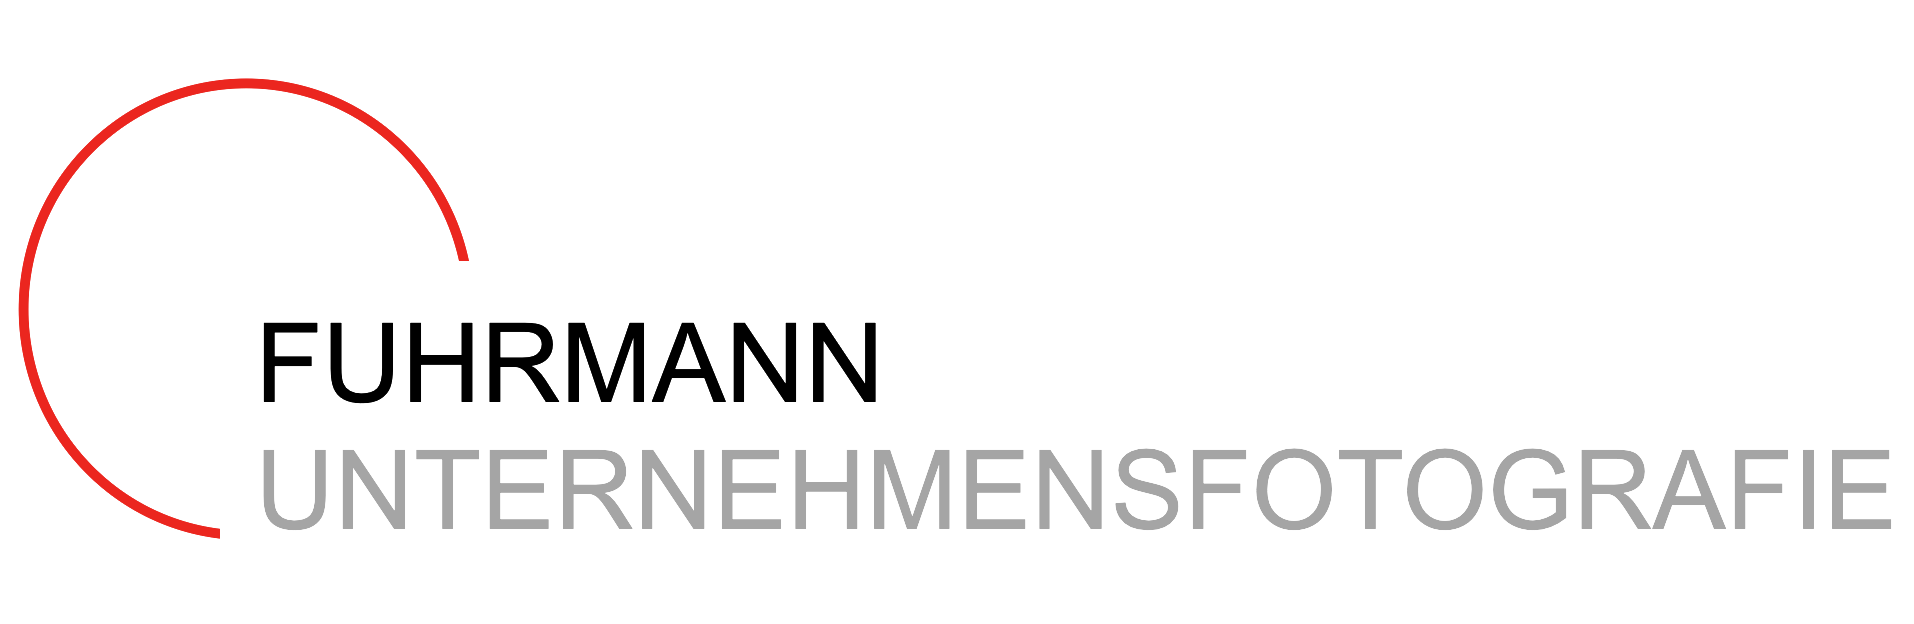 Das Logo von Fuhrmann Unternehmensfotografie